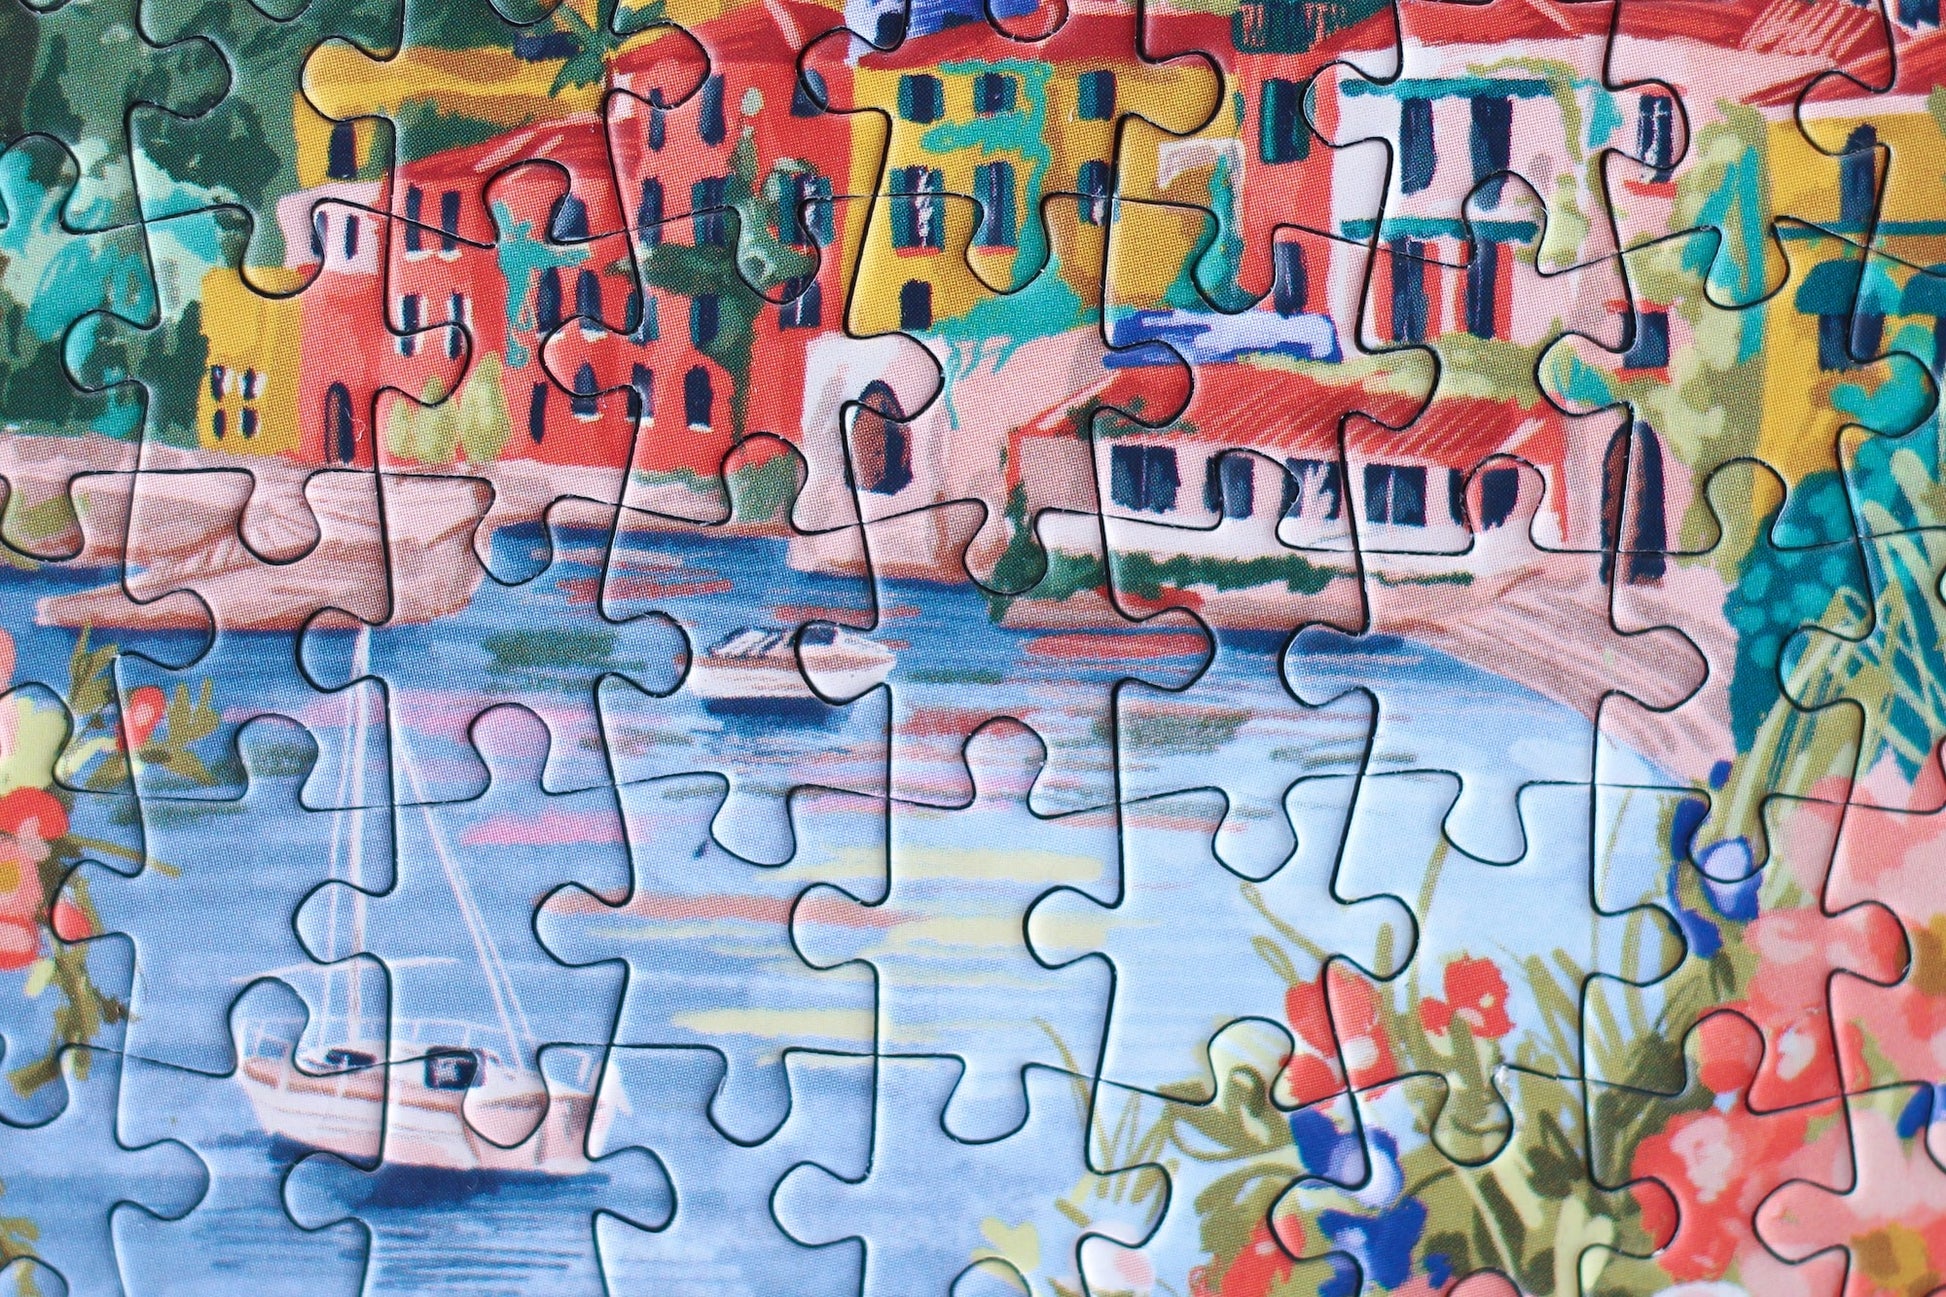 99-teiliges Minipuzzle für Erwachsene, das den Comer See in Varenna zeigt. In der Bucht befinden sich zwei Boote und die Sicht auf den See ist gesäumt von bunten Häusern.